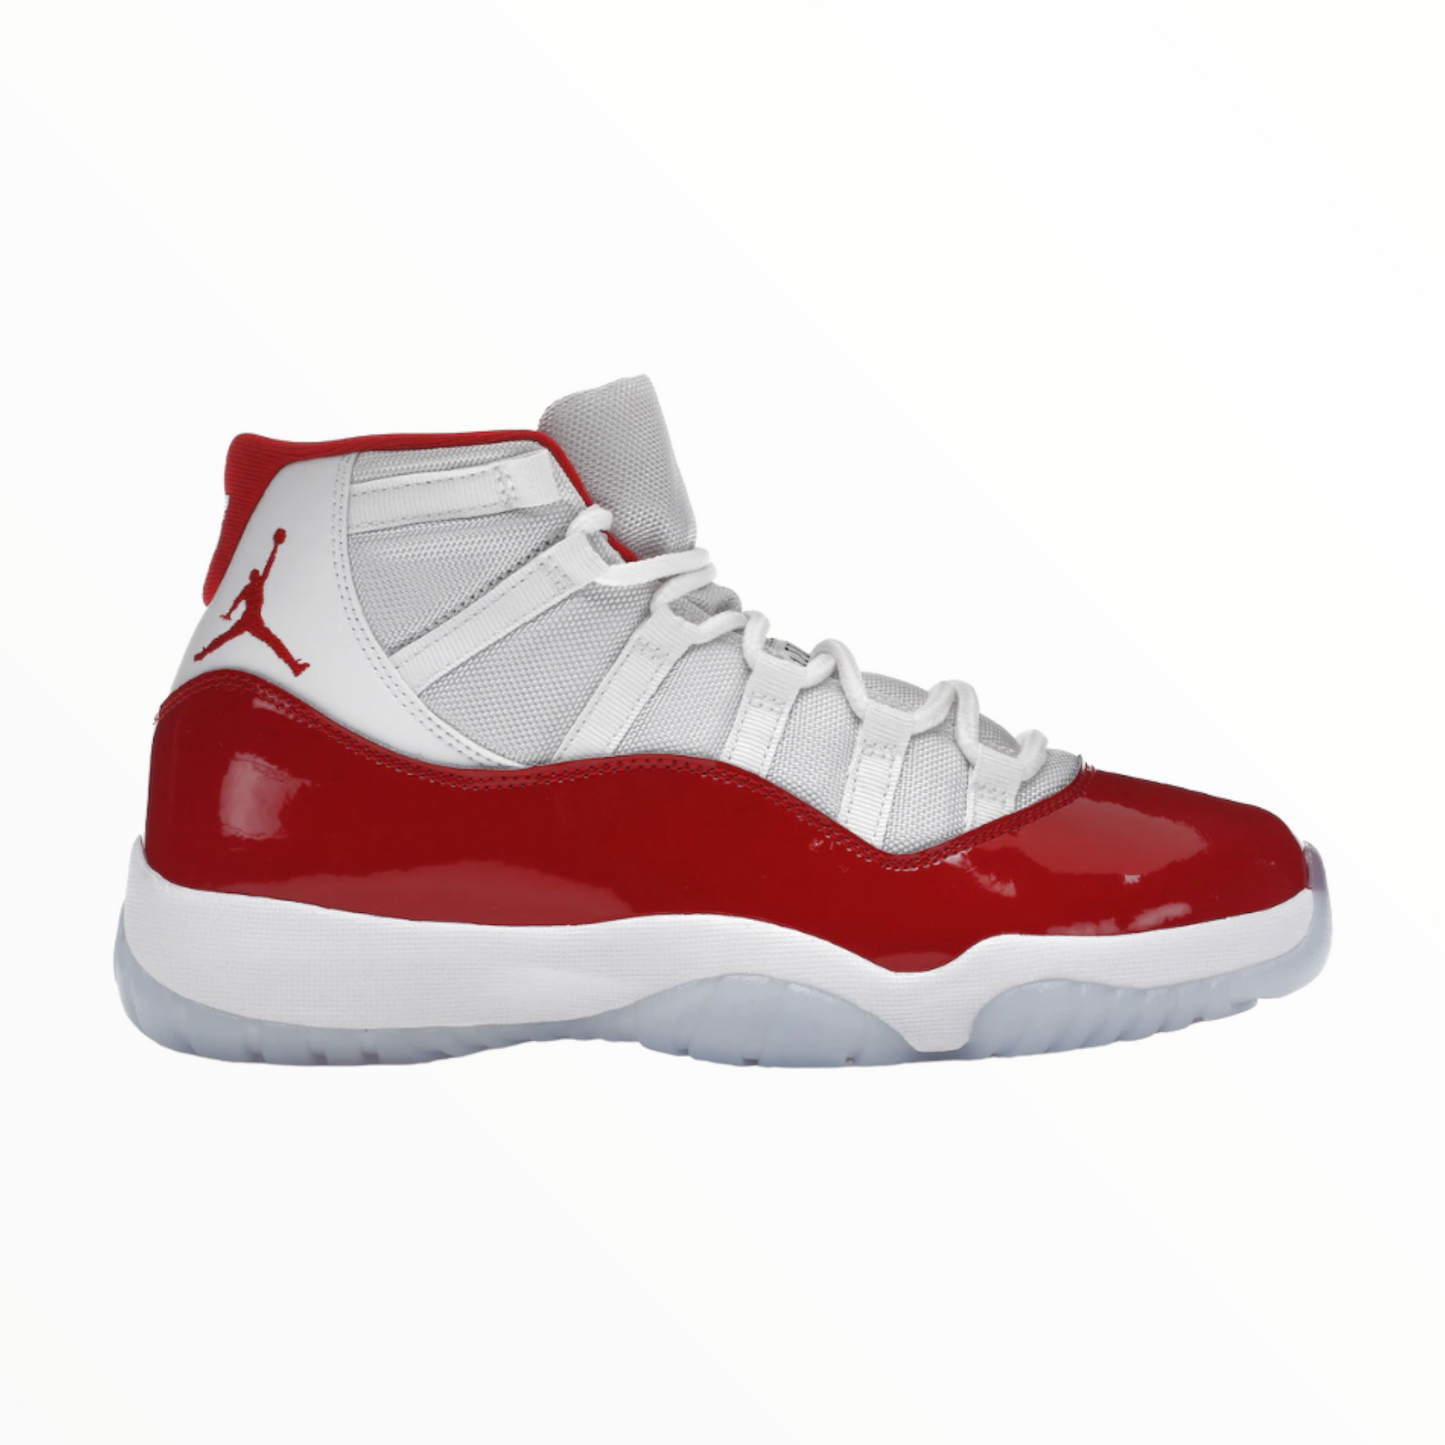 Jordan 11 Retro ”Cherry” (2022)